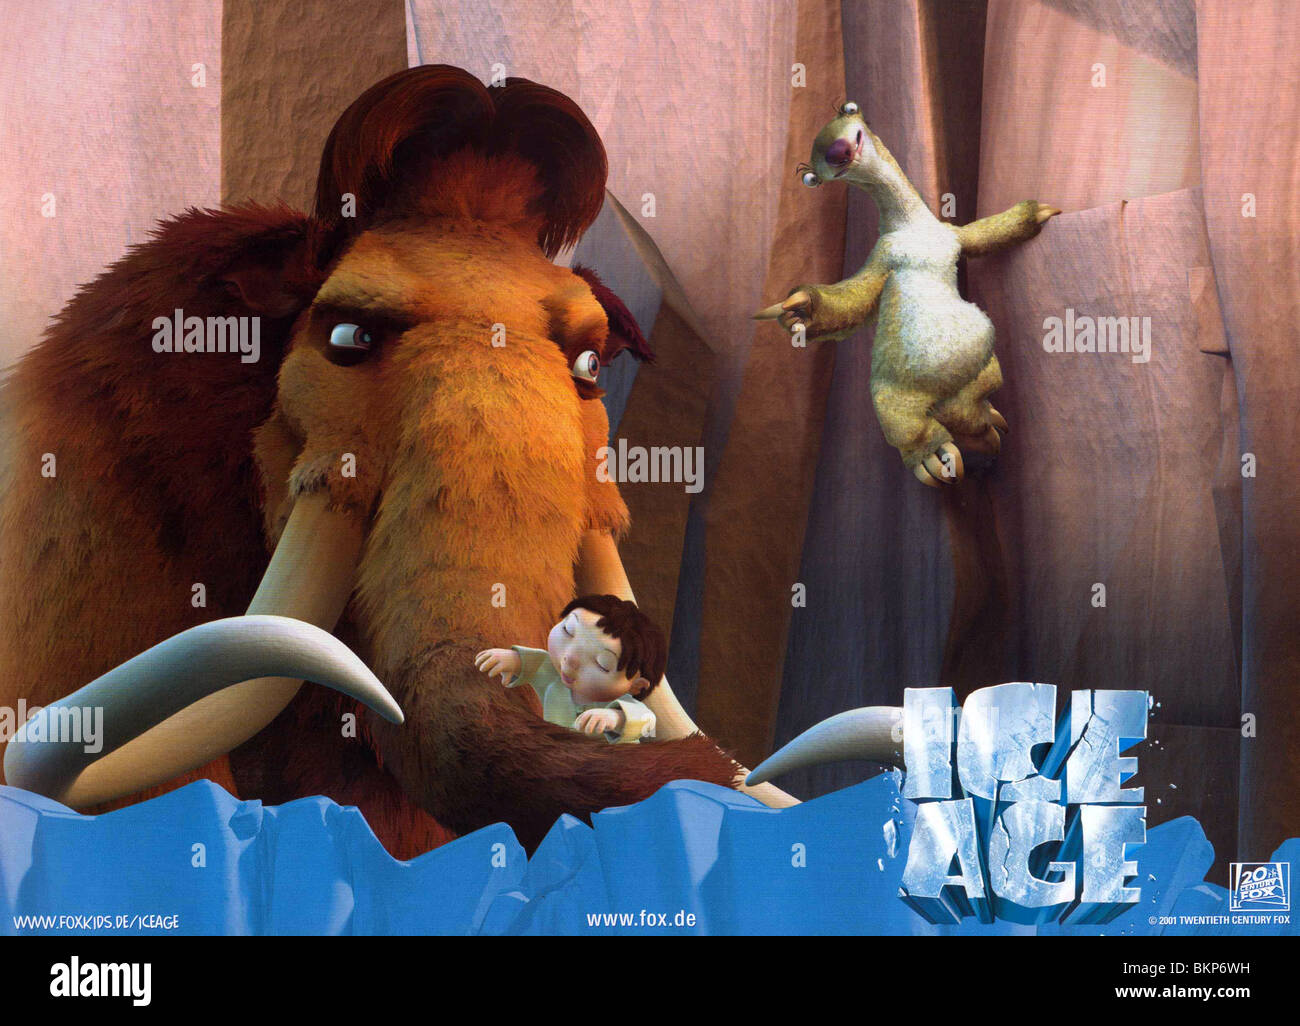 ICE AGE -2002 ANIMATION Stock Photo